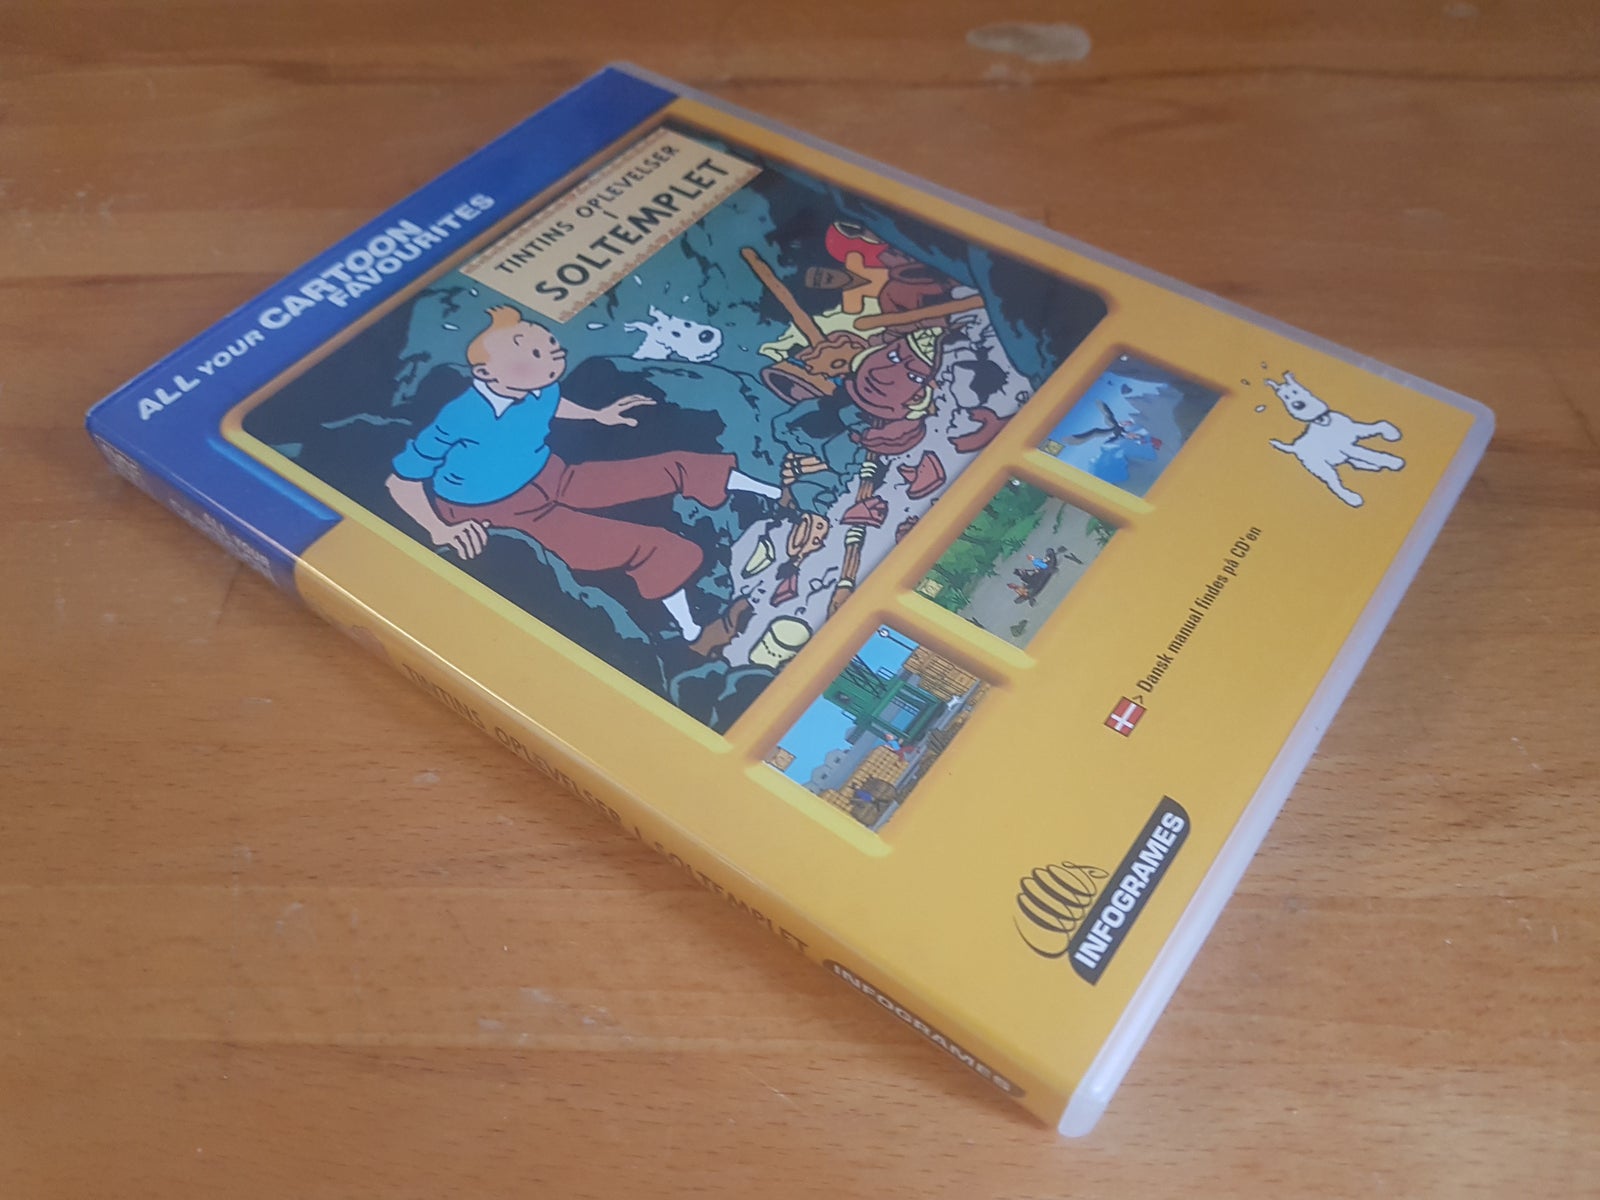 Tintins oplevelser i Soltemplet, til pc, adventure